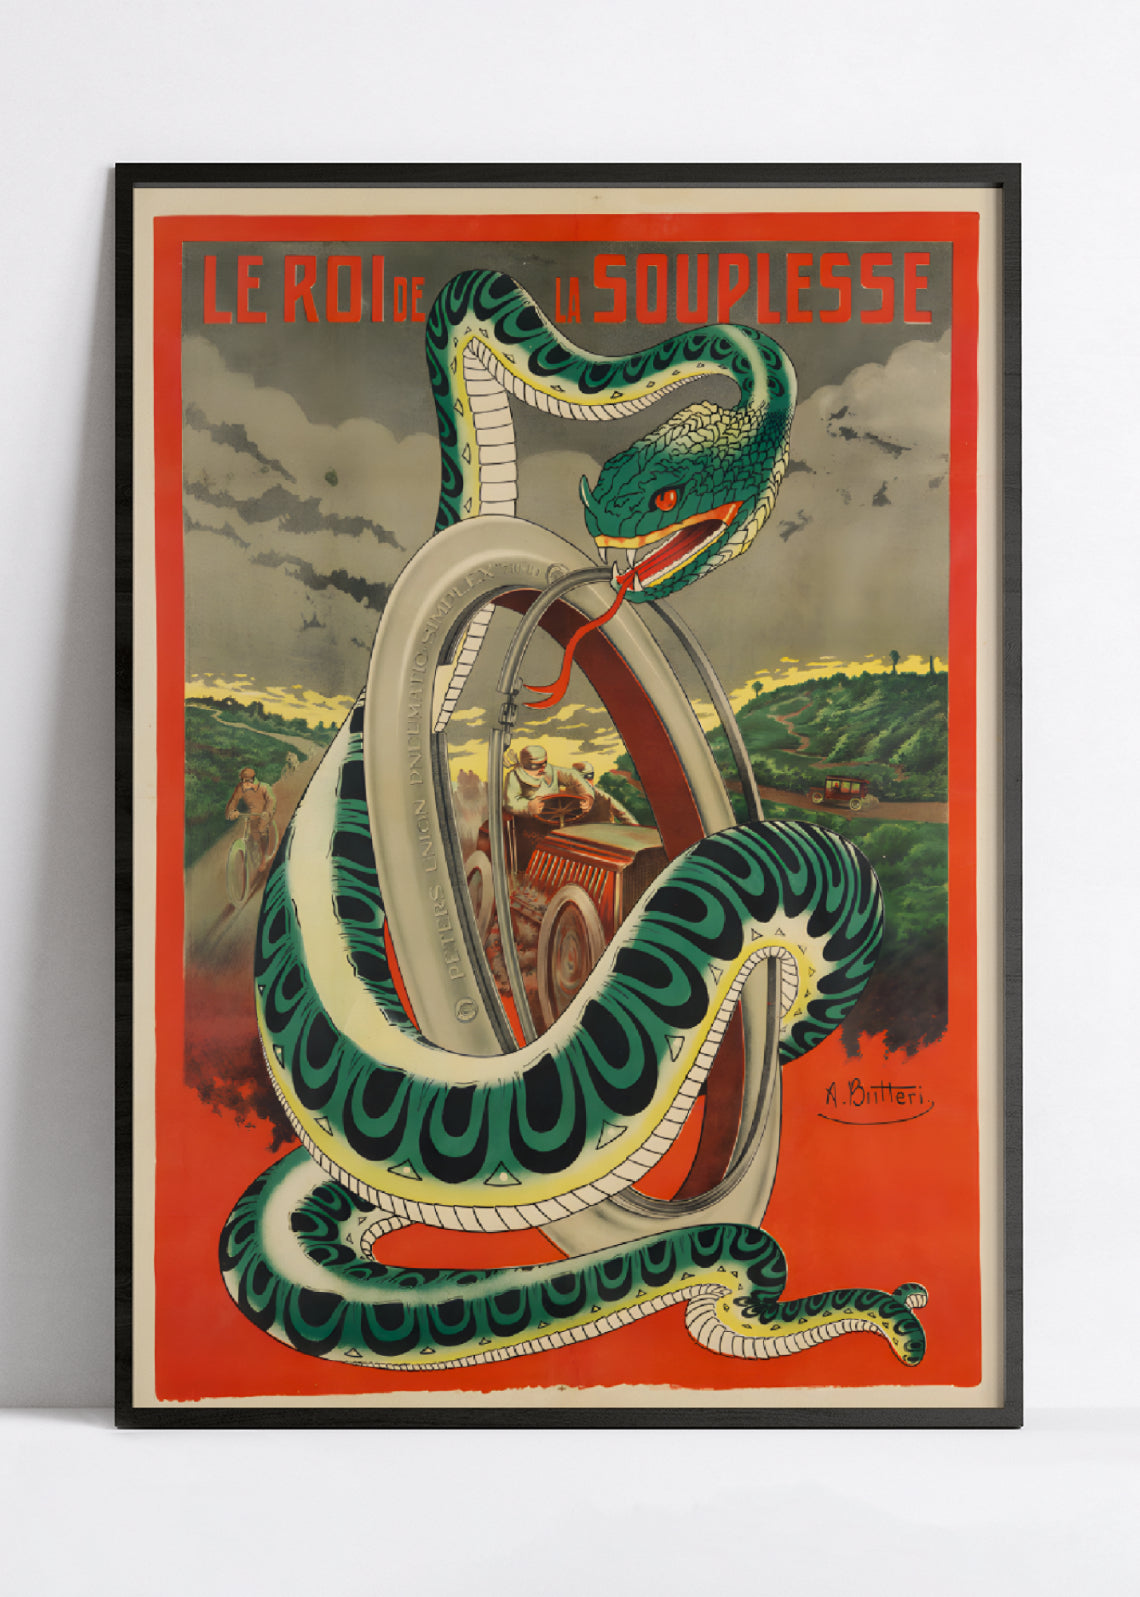 Affiche velo vintage "Le roi de la souplesse" - Achille Butteri - Haute Définition - papier mat 230gr/m²